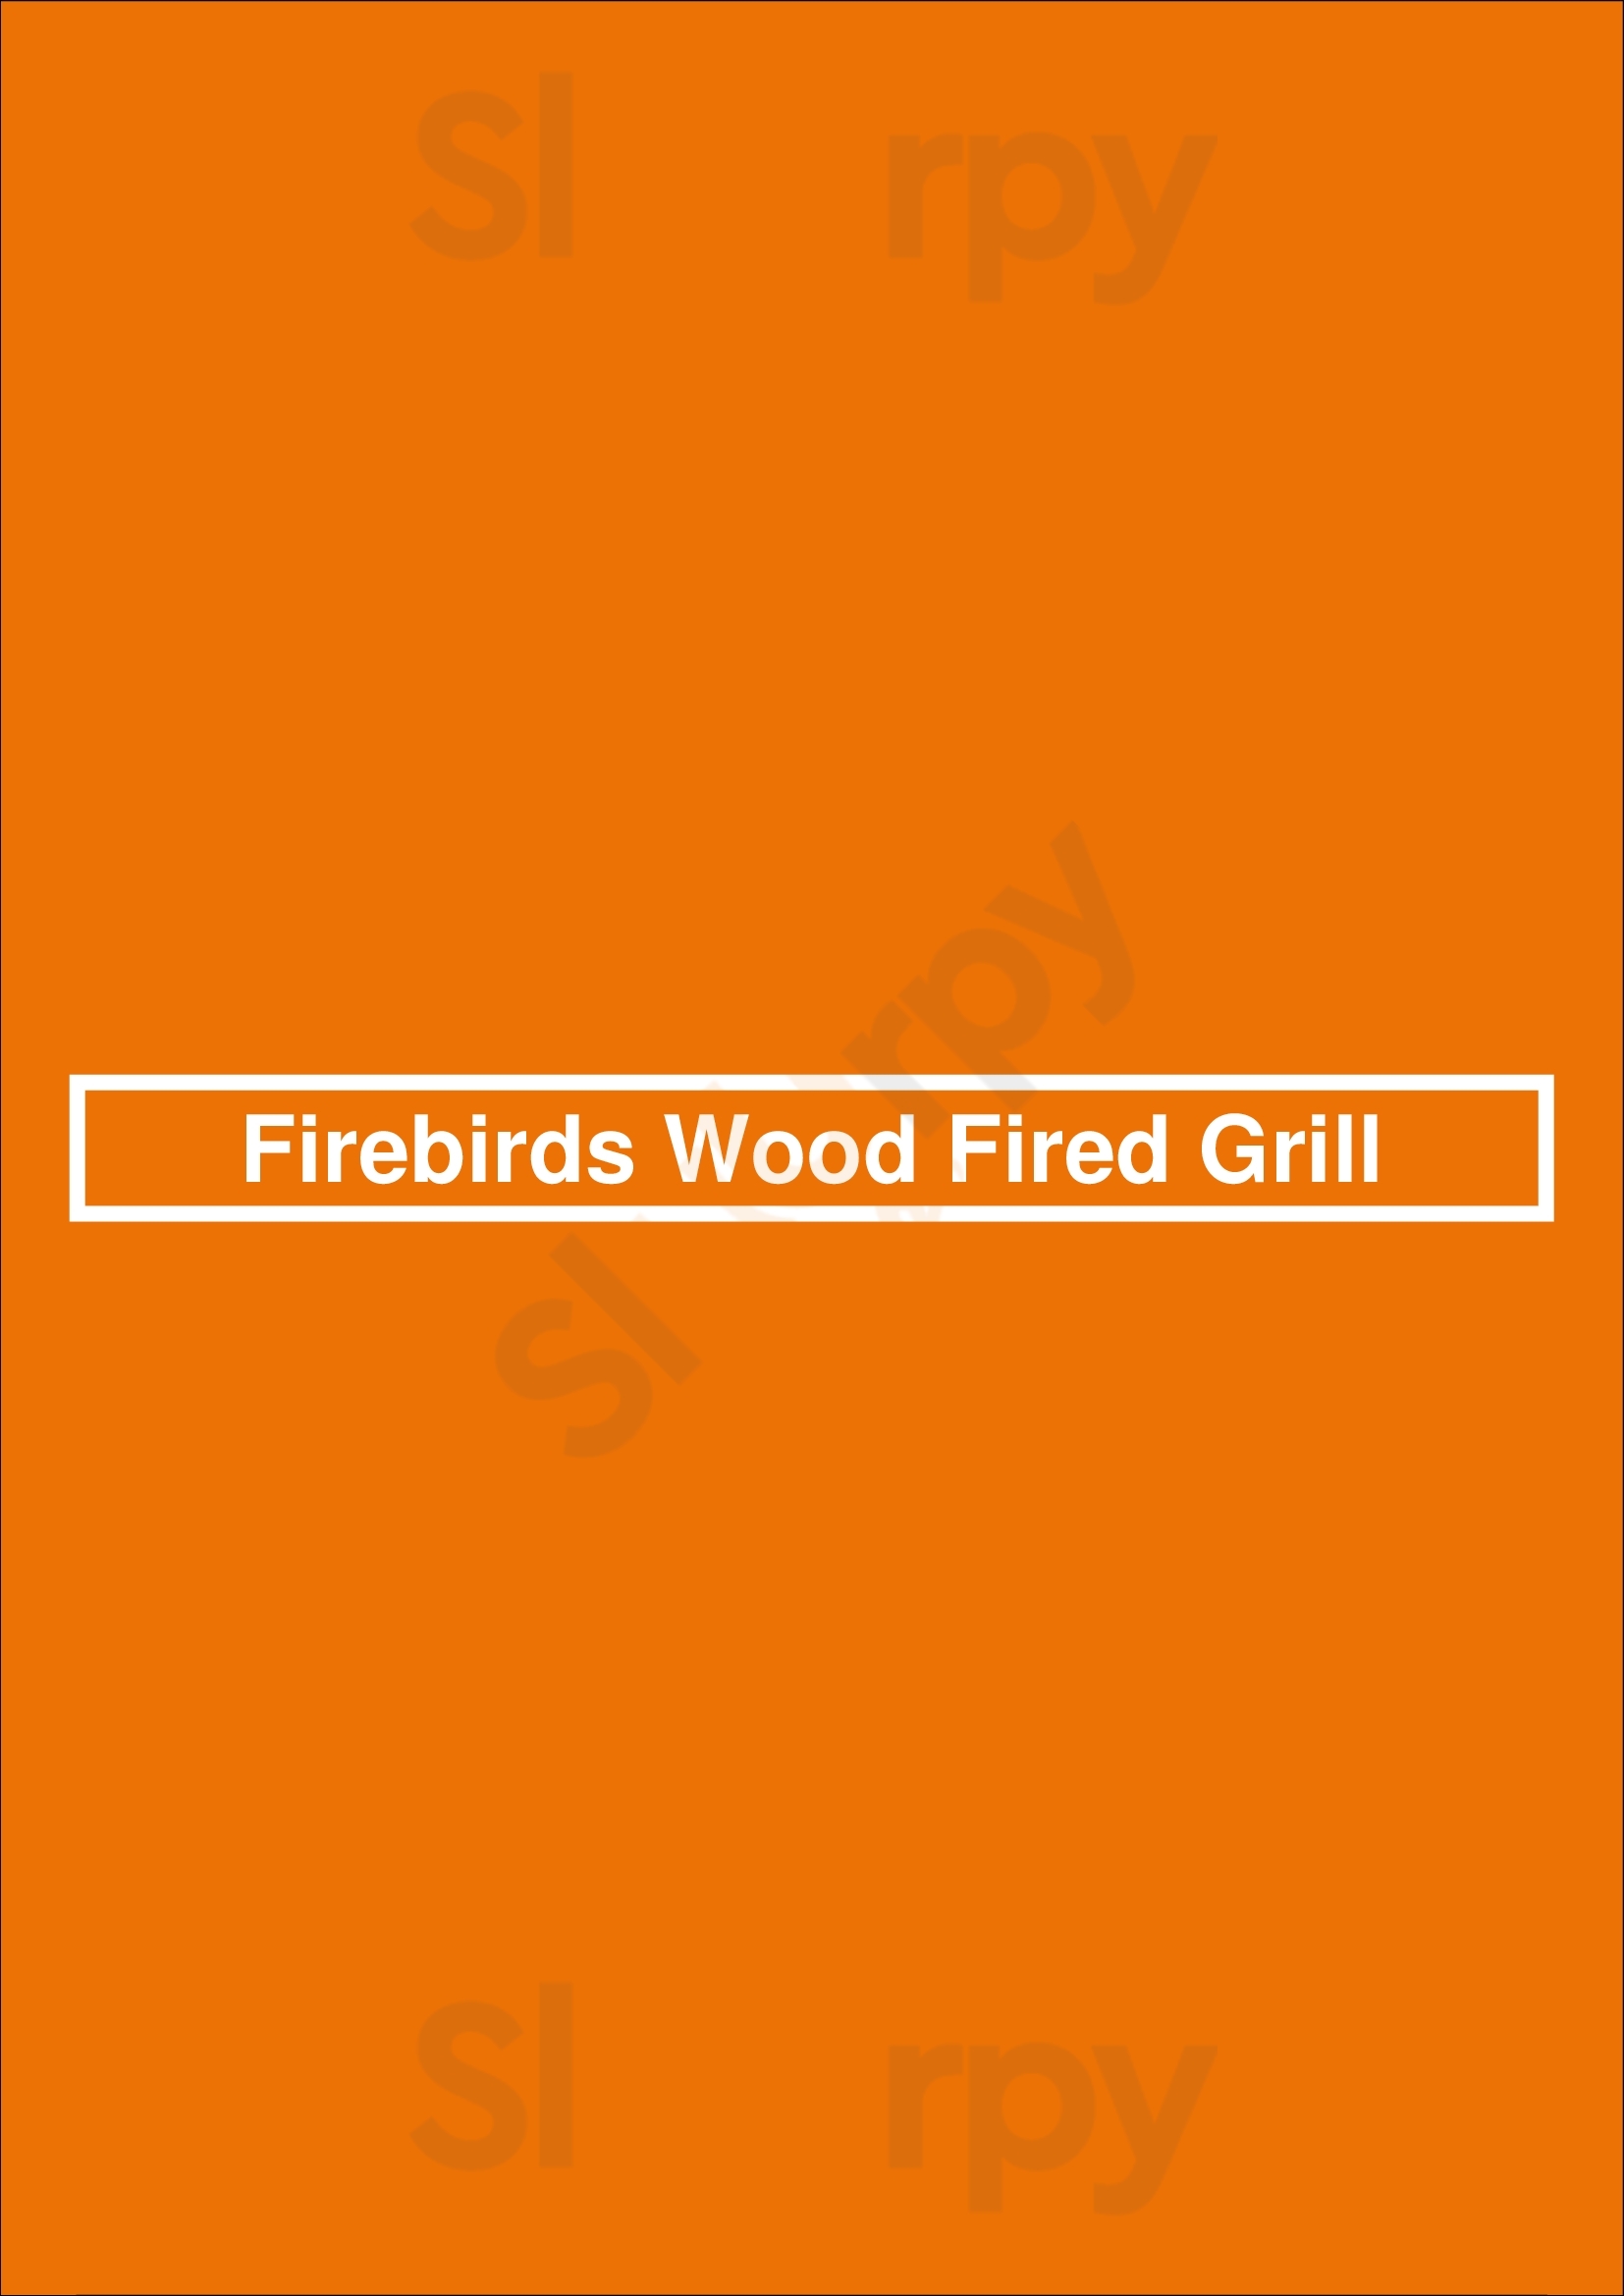 Firebirds Wood Fired Grill Eatontown Menu - 1